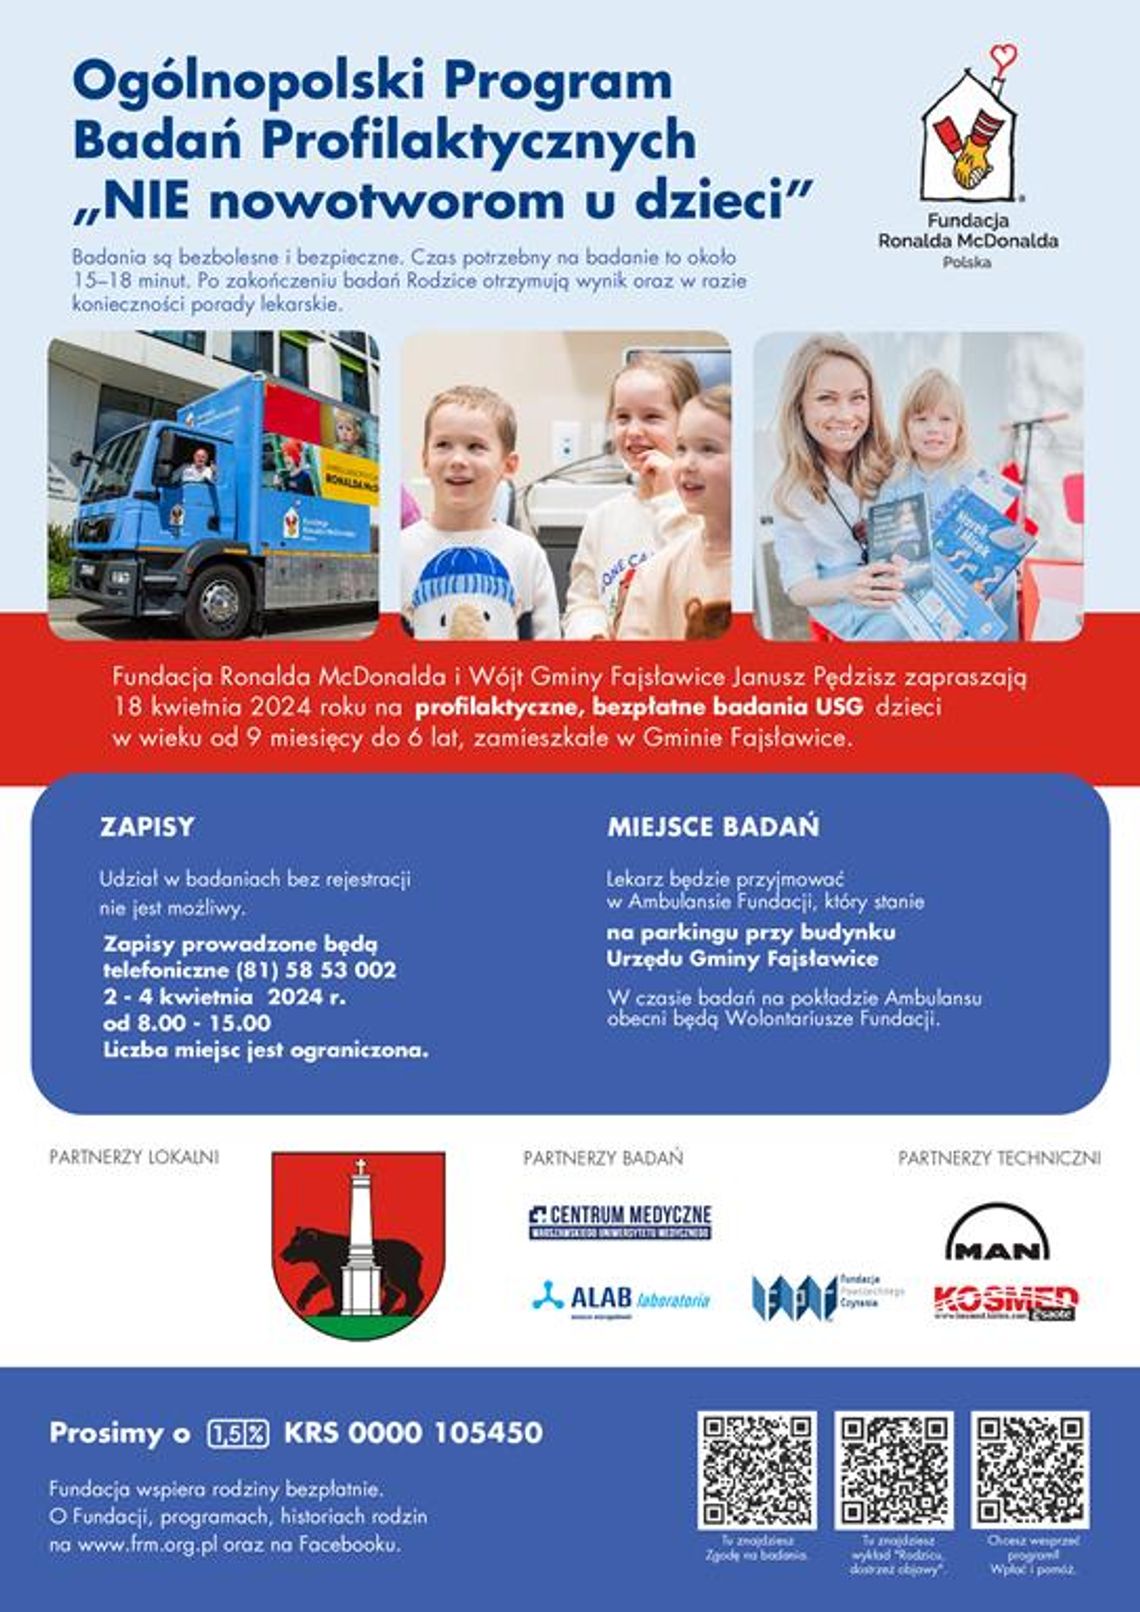 Plakat informuje o bezpłatnych badaniach USG dzieci w Fajsławicach - „NIE nowotworom u dzieci” Fundacji Ronalda McDonalda. , które odbędą się 18 kwietnia 2024r. przy budynku Urzędu Gminy Fajsławice